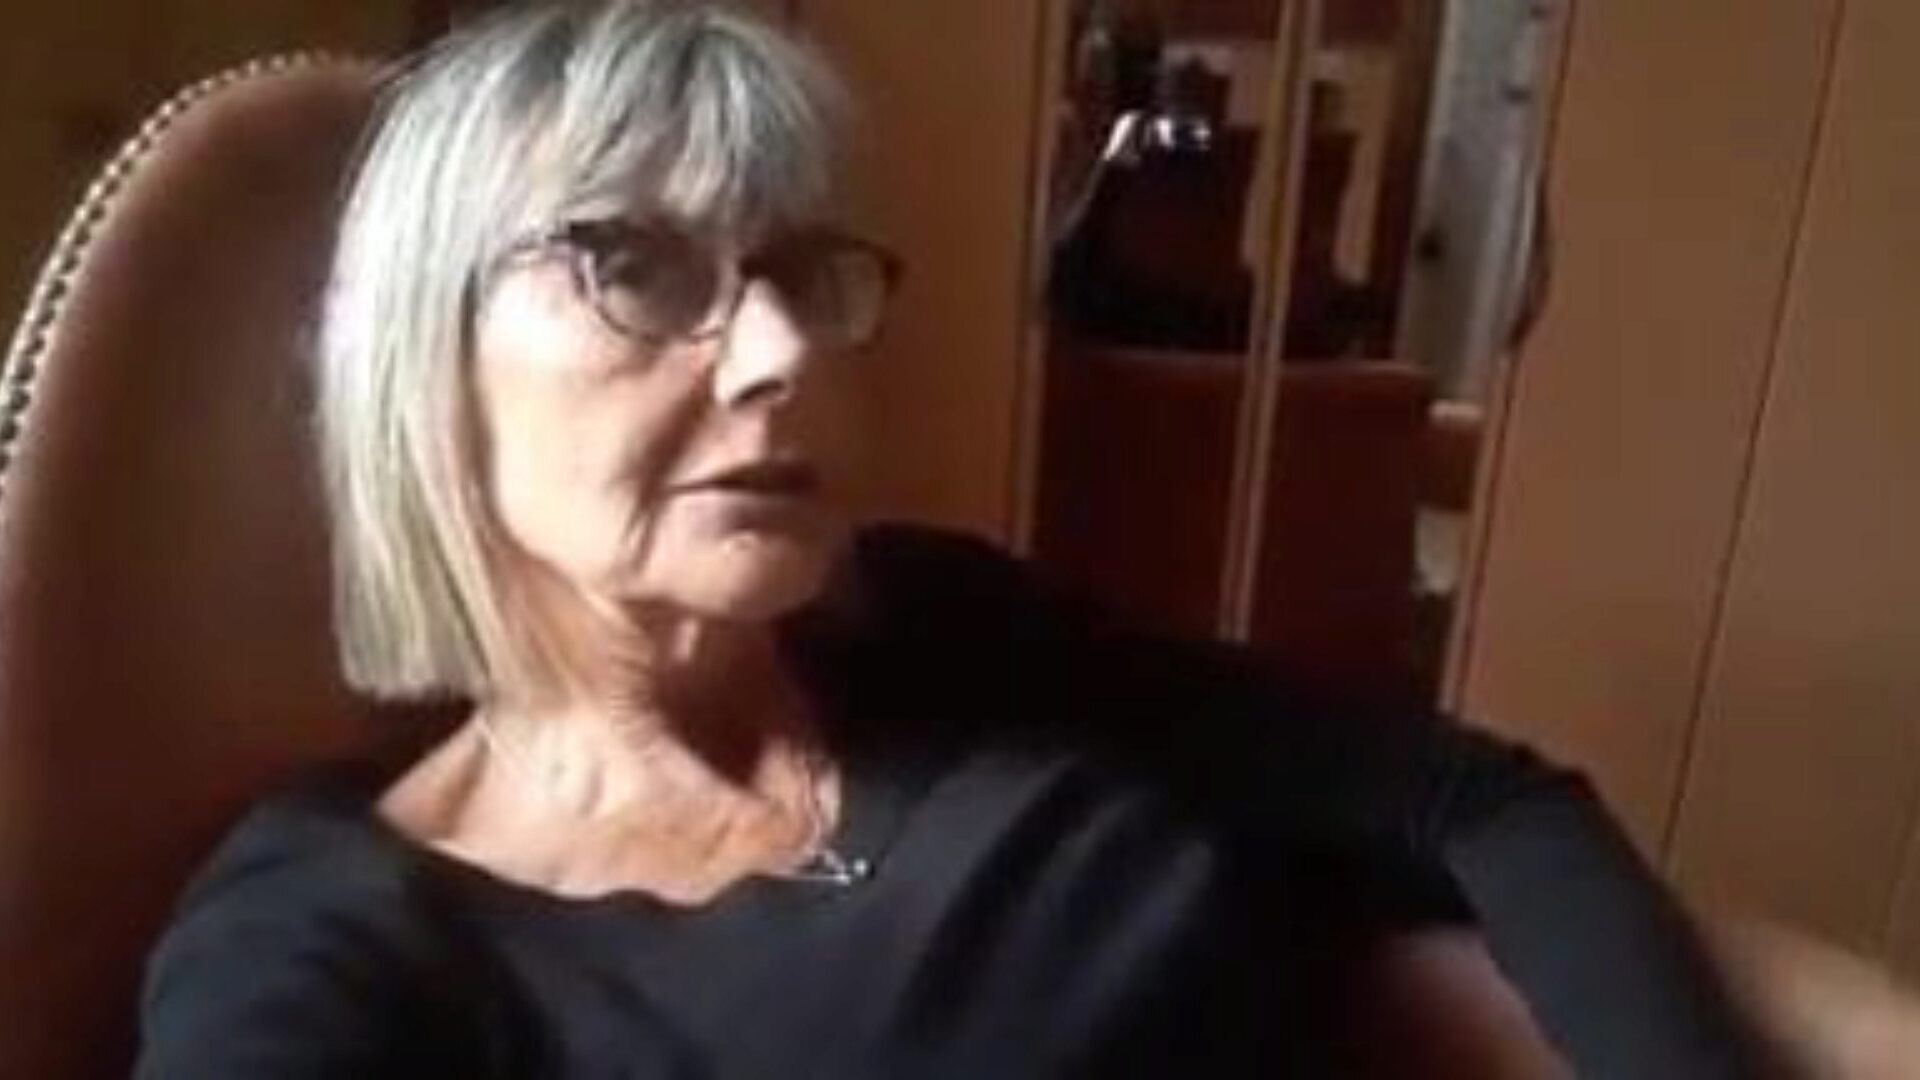 bunicuță masturbare: bunicuță dvd video porno 41 - xhamster urmărește bunicuță masturbare tub sex scena filmului gratuit pentru xhamster, cu colecția minunată de bunicuță franceză dvd și tub roșu secvențe de pornografie xxx